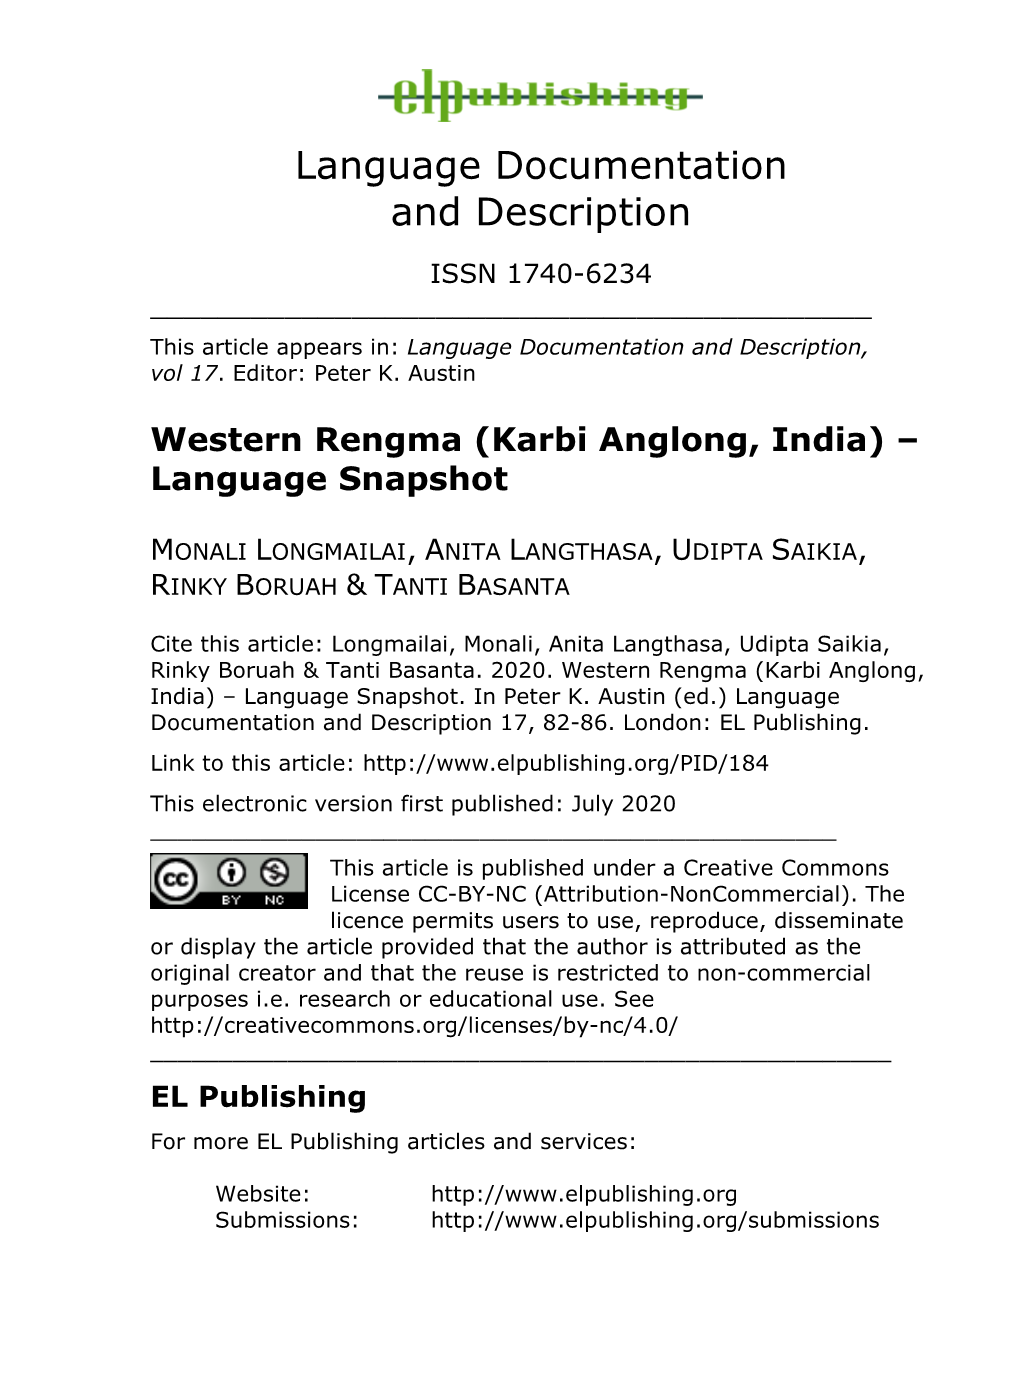 Western Rengma (Karbi Anglong, India) – Language Snapshot